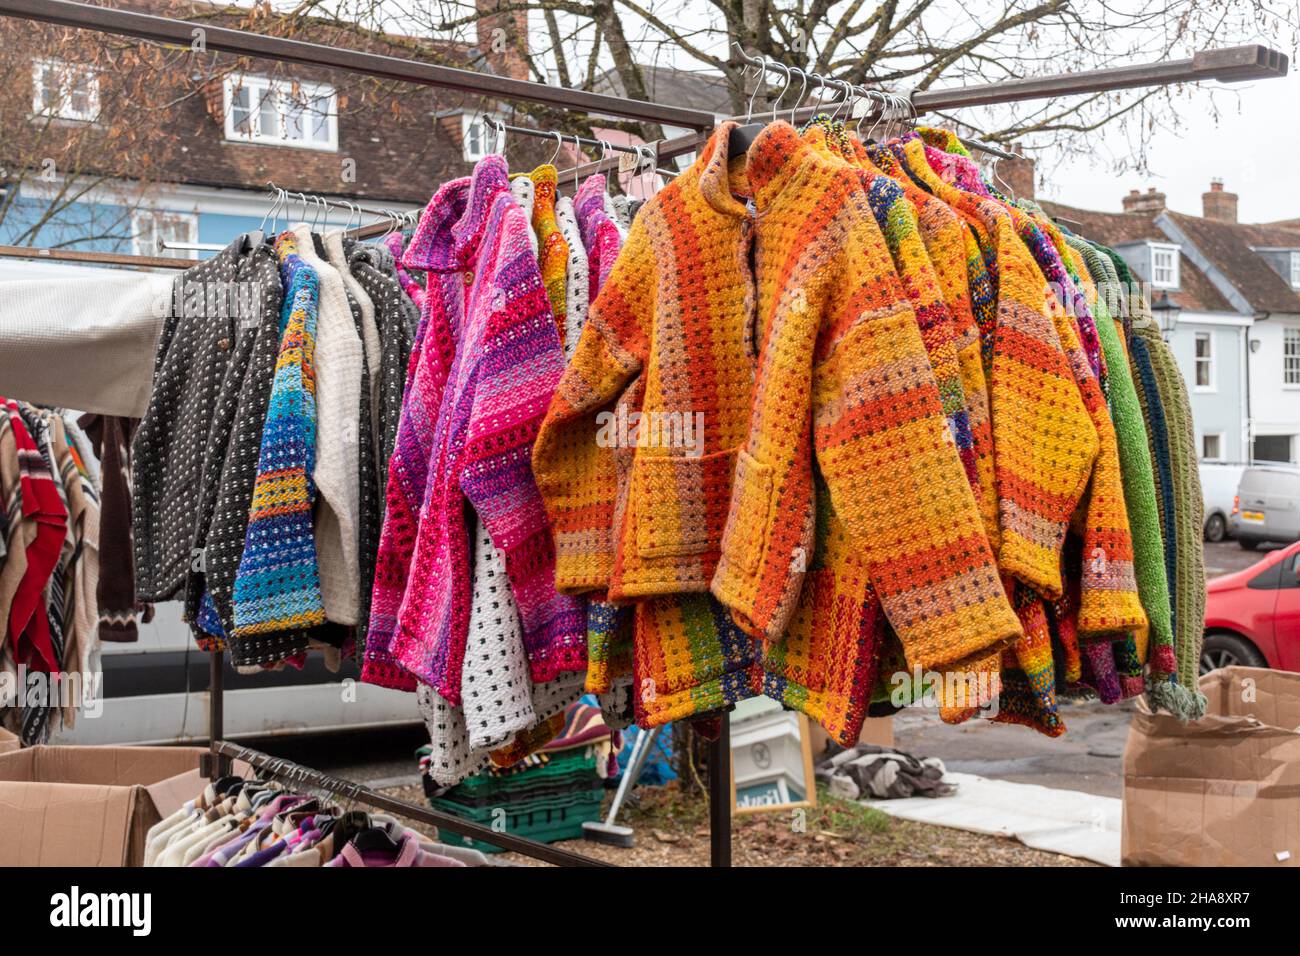 Place du marché avec des vestes en laine aux couleurs vives, des pull-overs, des cardigans, des tricots, Royaume-Uni Banque D'Images